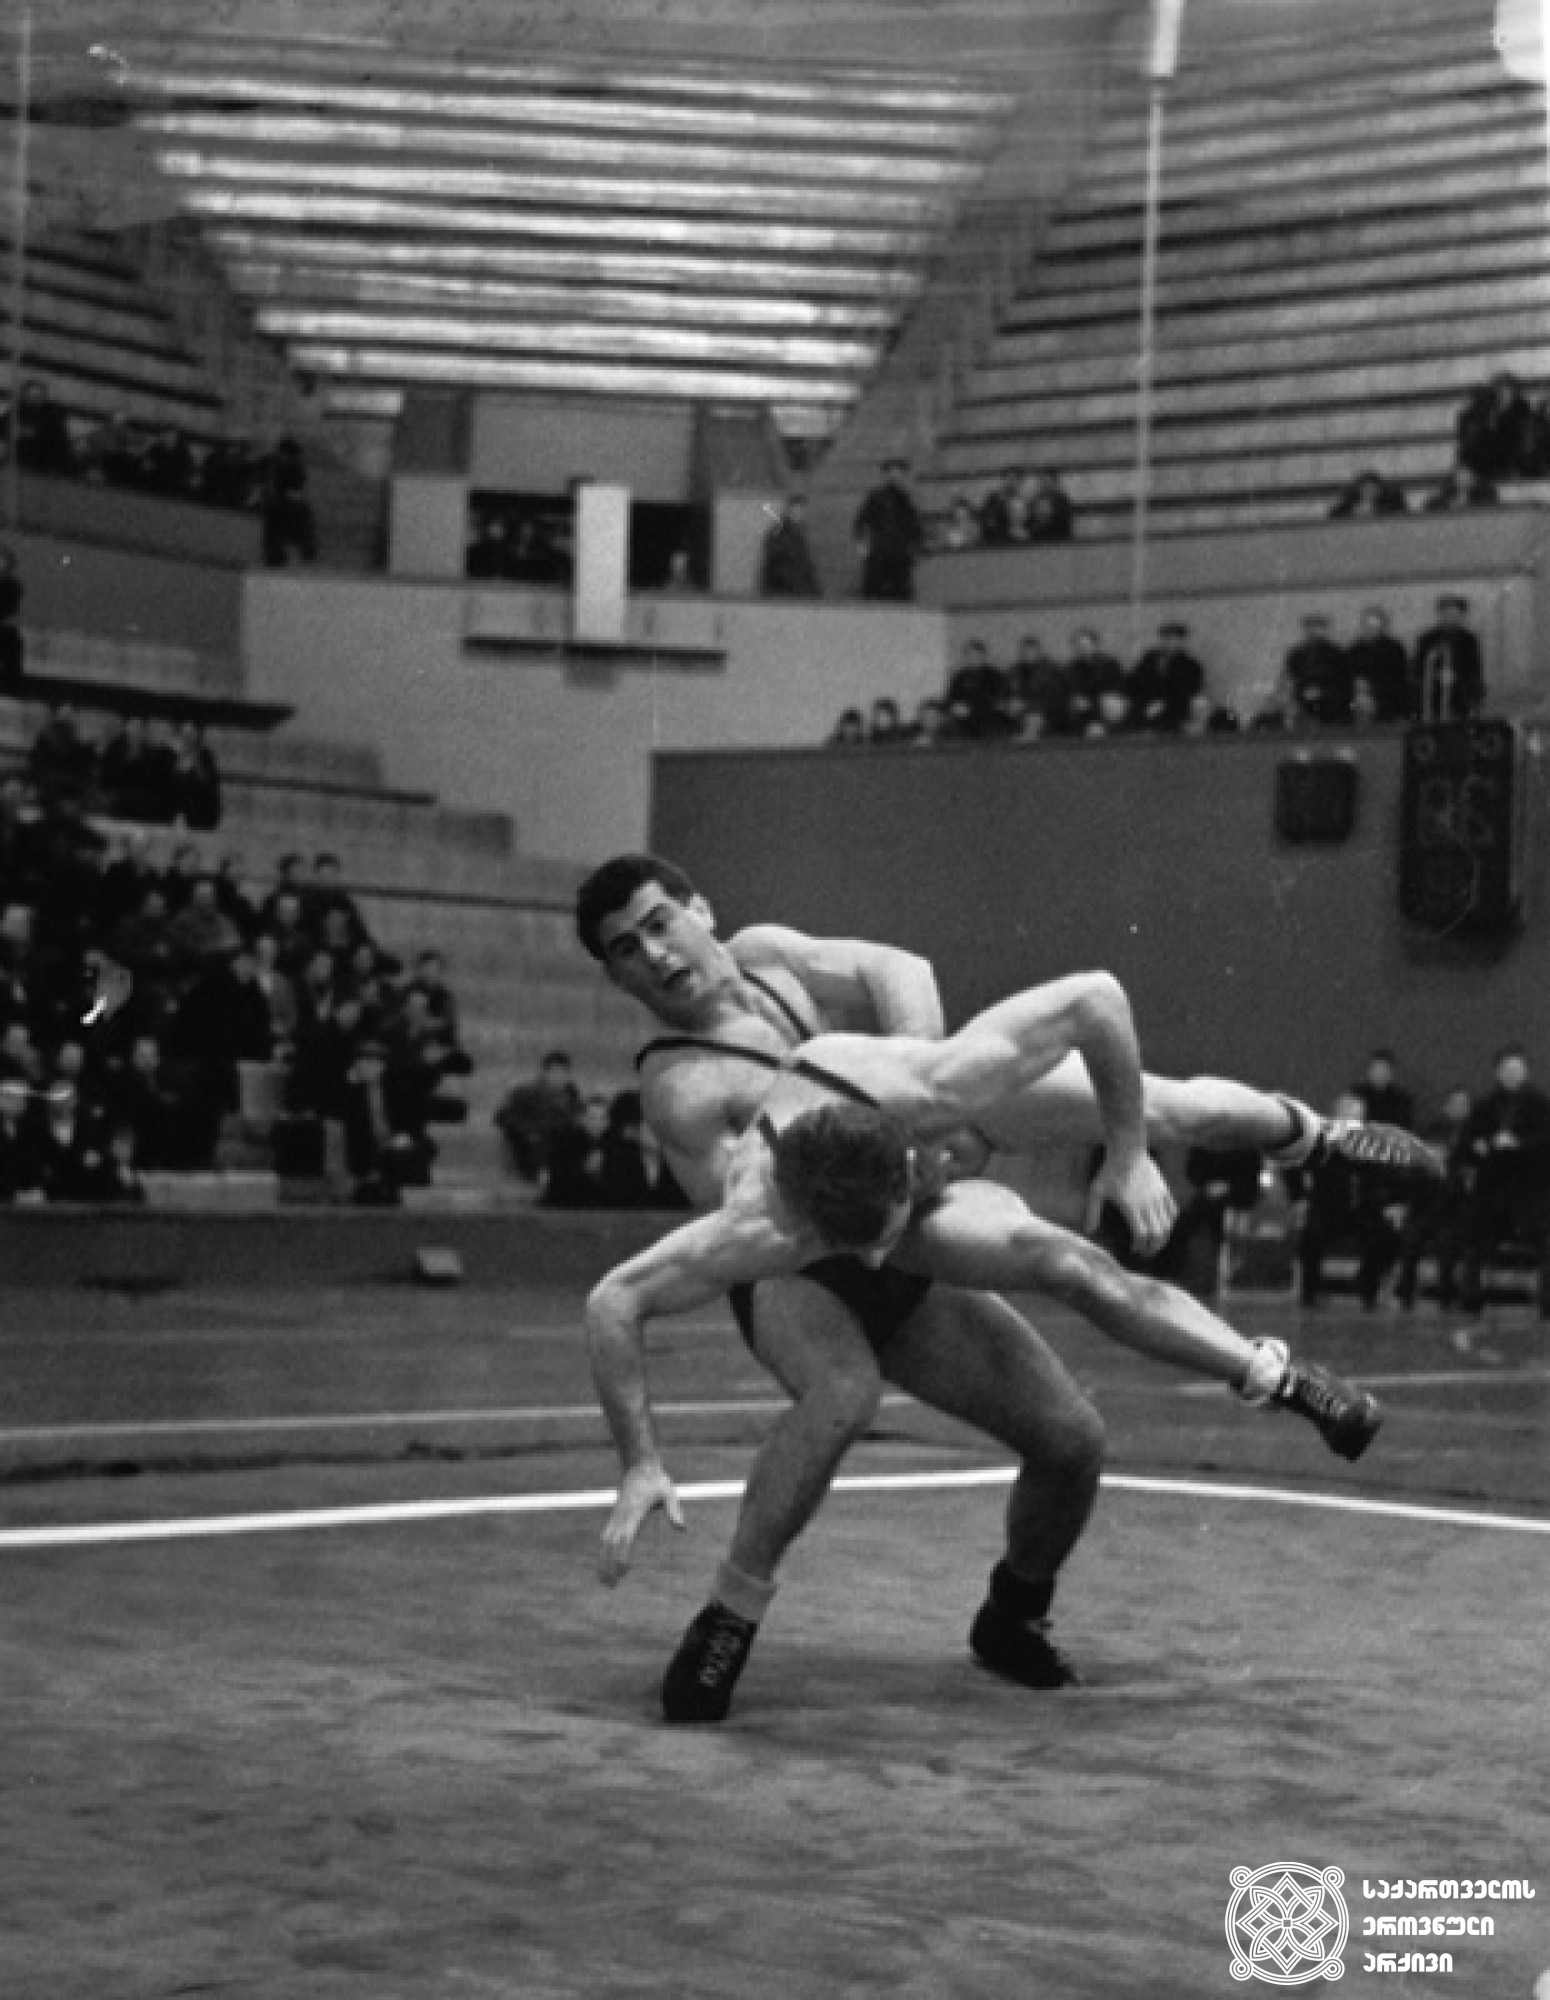 დავით გვანცელაძე. <br>
XVIII ოლიმპიური თამაშების მესამე პრიზიორი ჭიდაობაში (1964 წელი, ტოკიო). <br>
ფოტო საქართველოს ეროვნული ოლიმპიური კომიტეტის ვებგვერდიდან. <br>
David Gvantseladze. <br>
Third-prize winner of the XVIII Olympic Games in Wrestling (1964, Tokyo). <br>
Photo from the web-site of the Georgian National Olympic Committee.